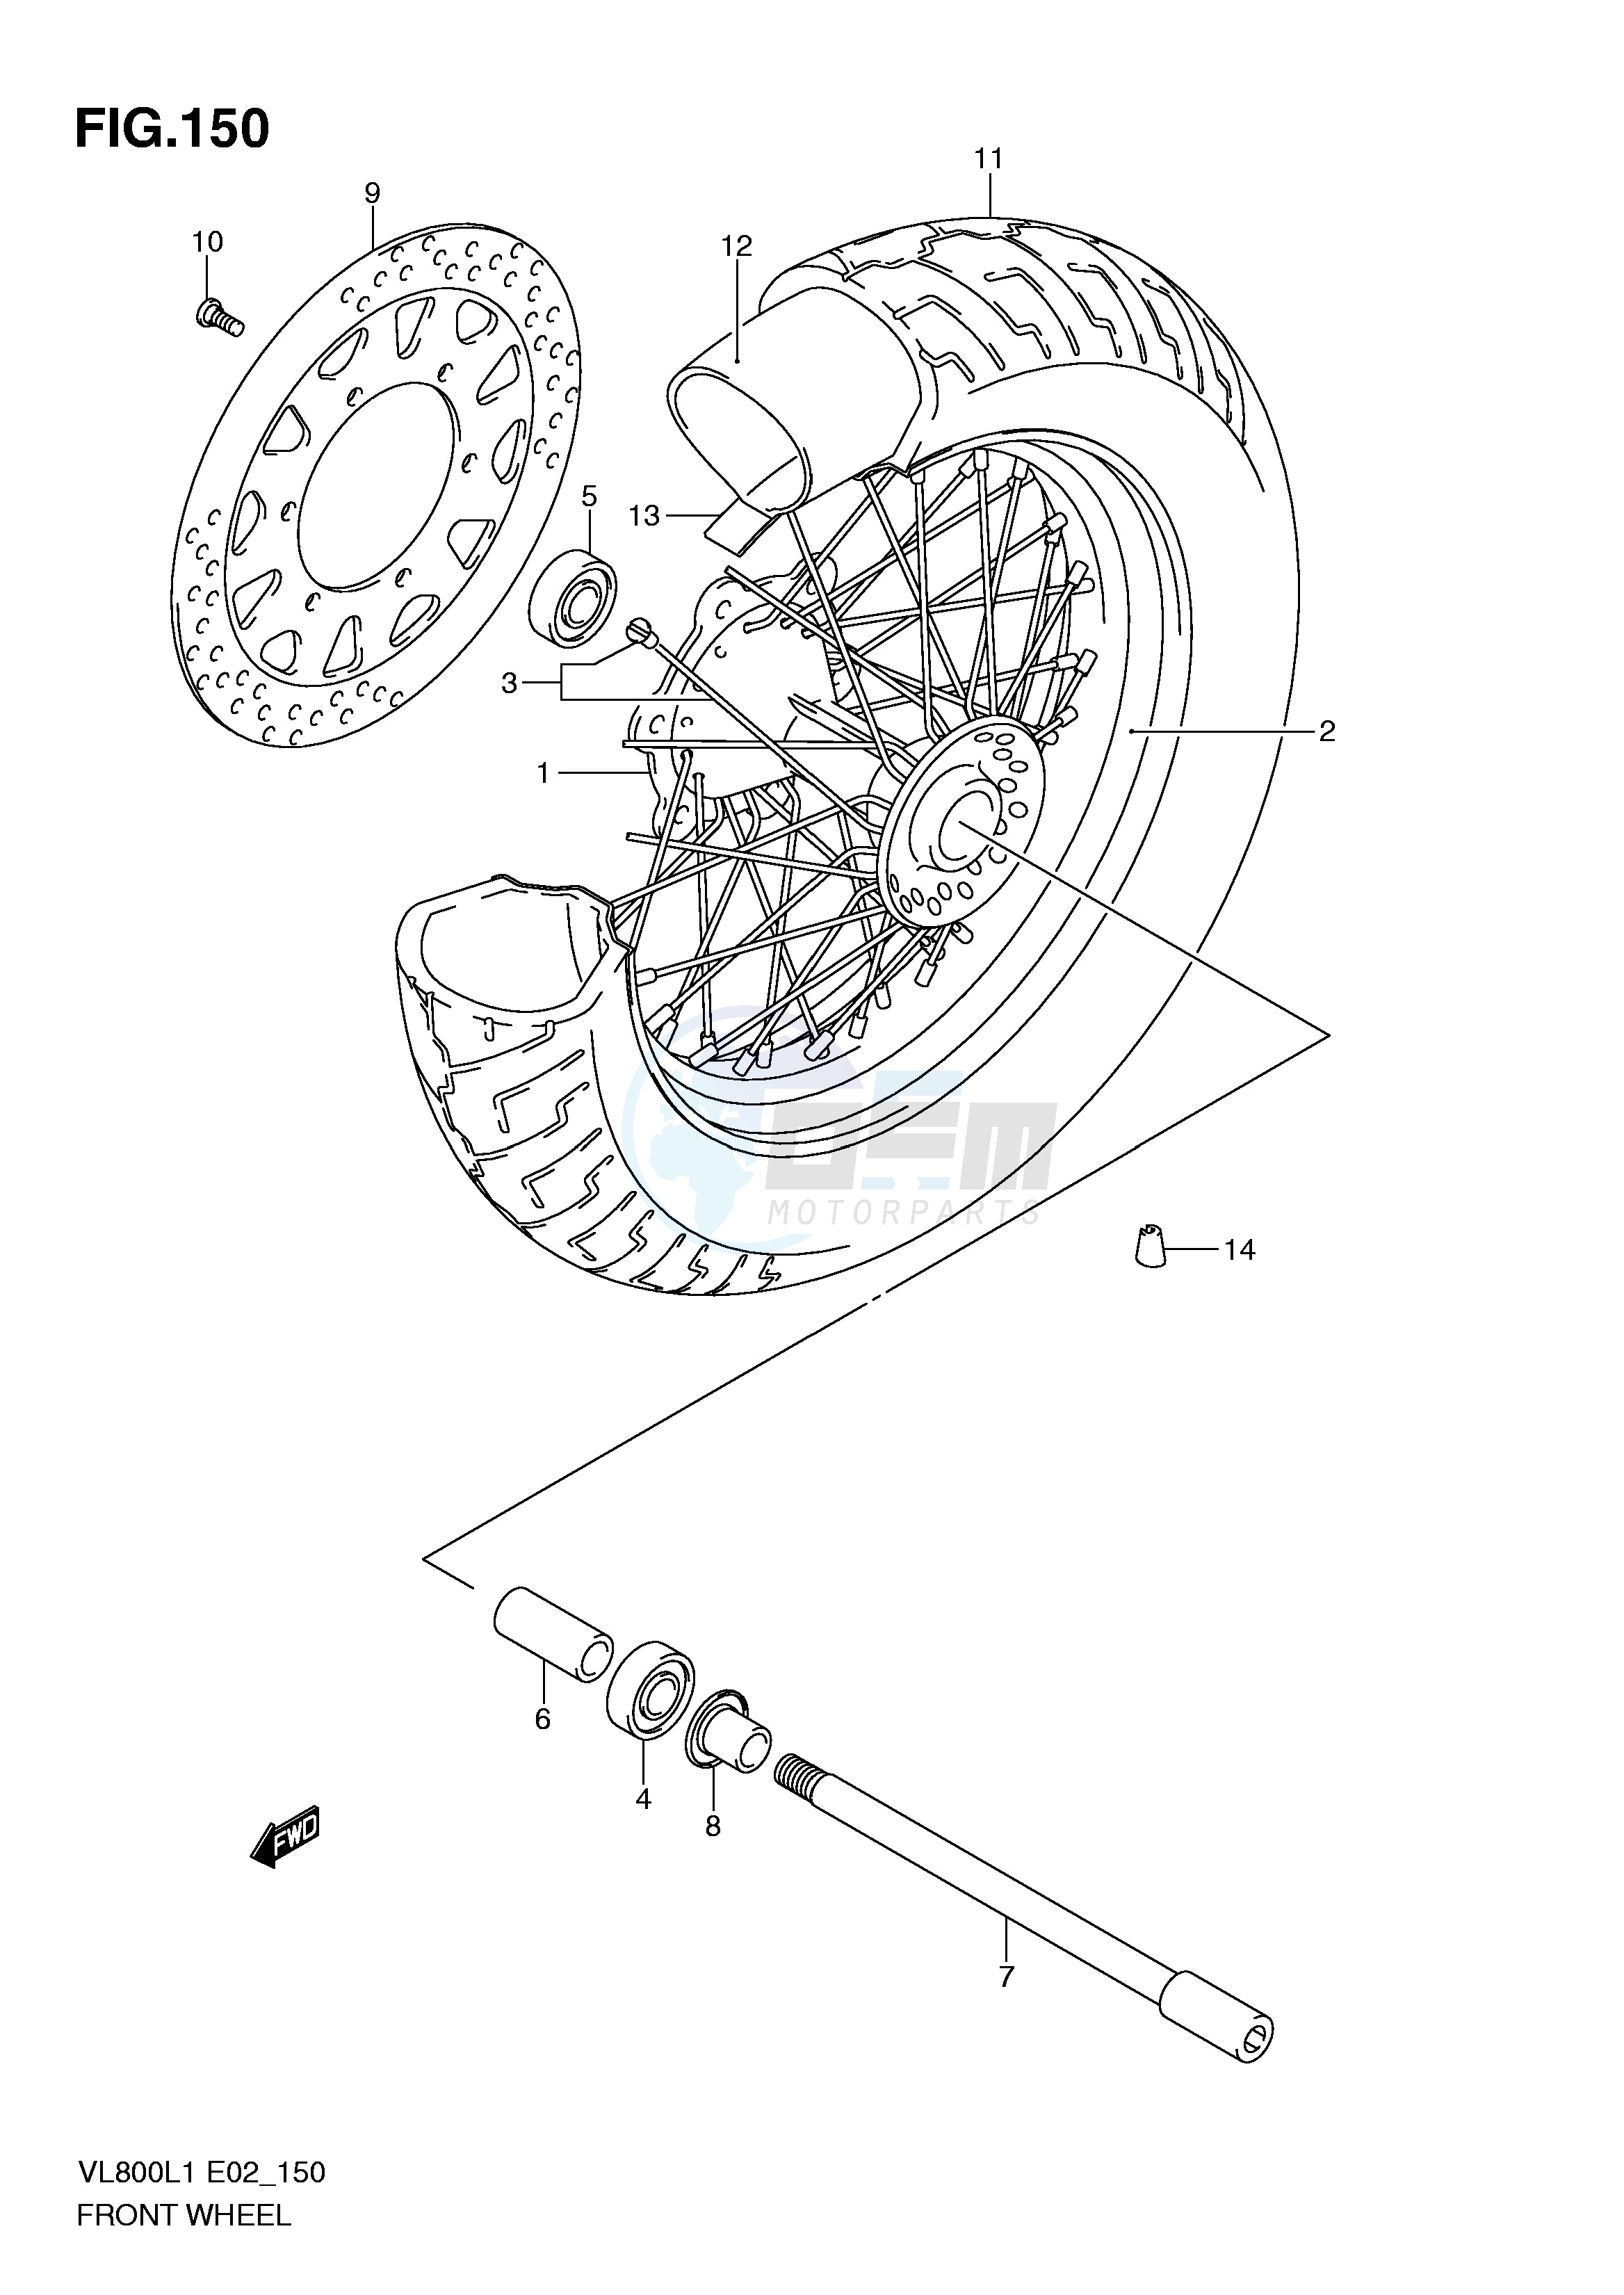 FRONT WHEEL (VL800L1 E24) blueprint